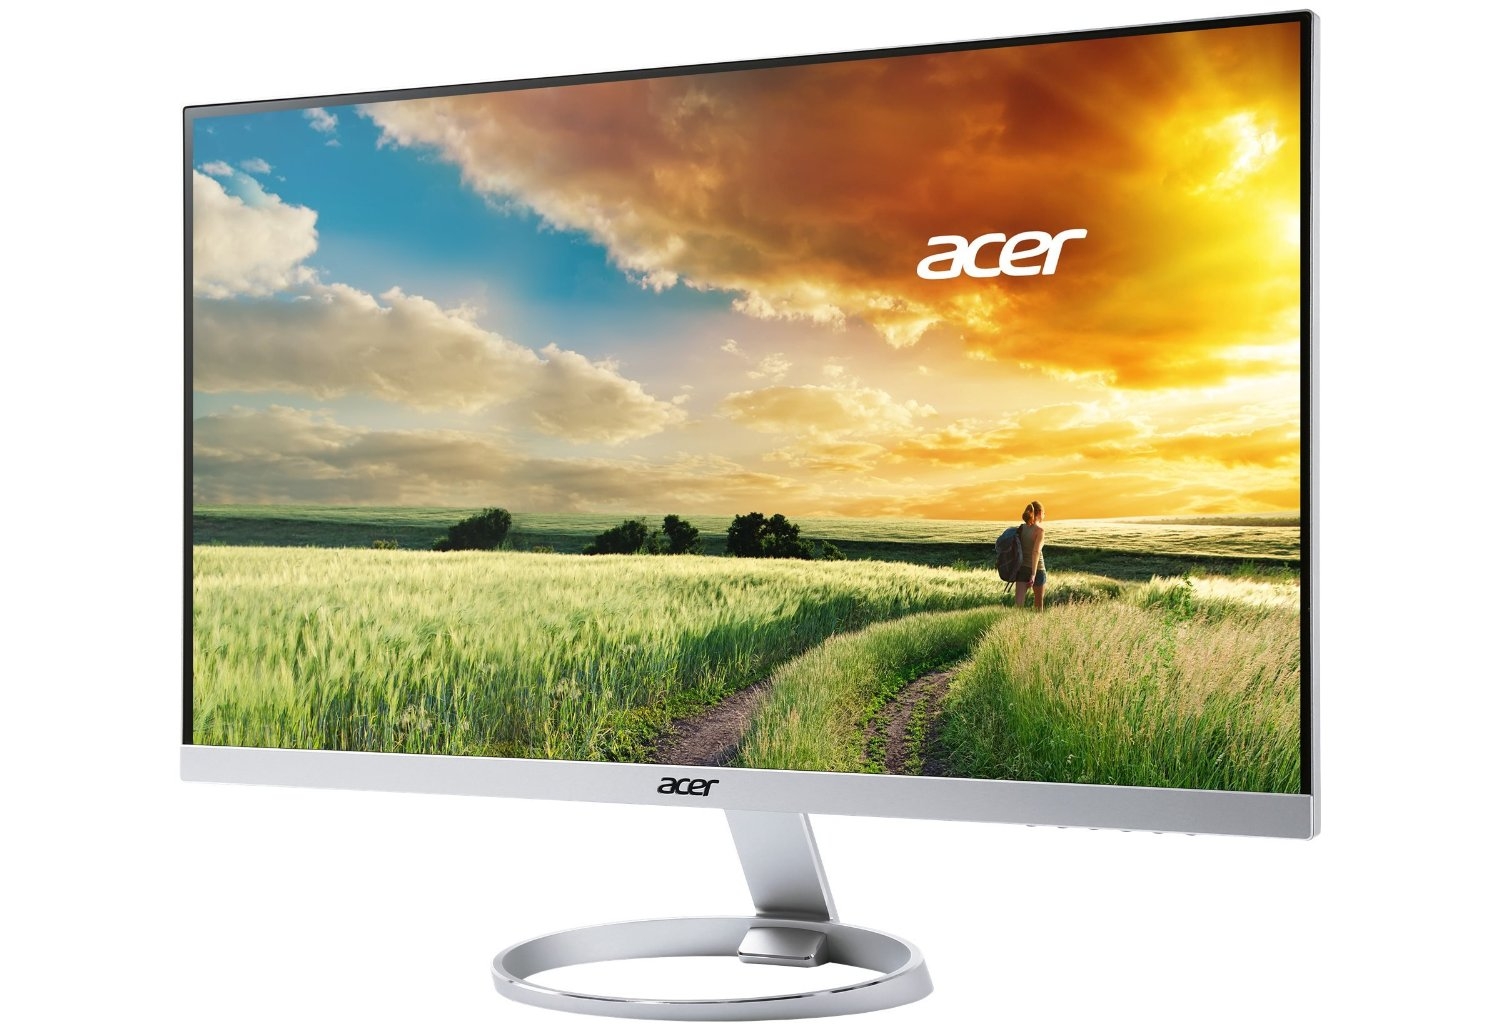 Amazon Blitzangebote: Acer-Monitor mit 1440p für nur 309€